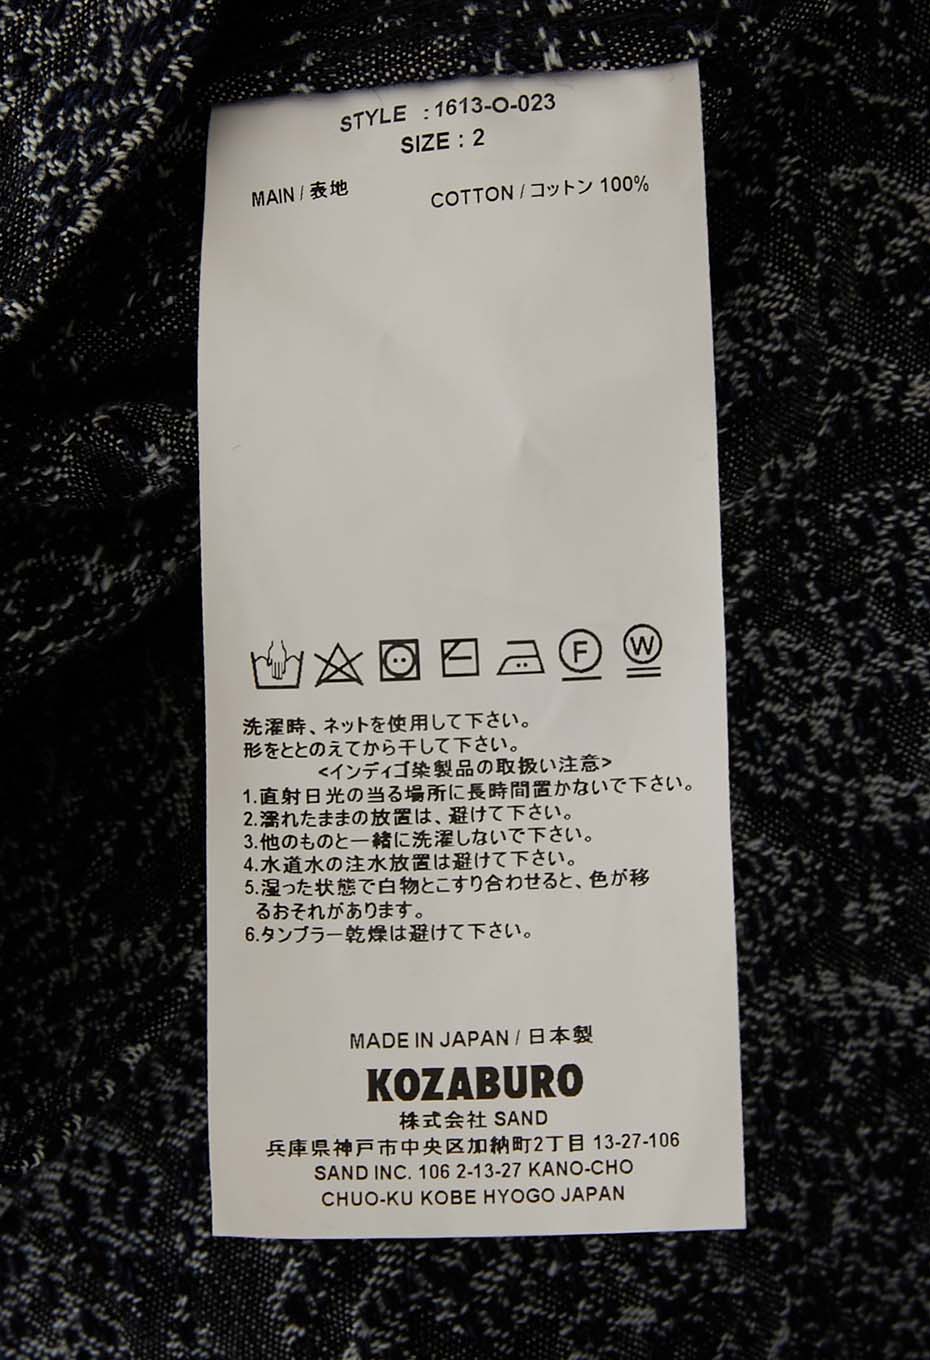 KOZABURO|Blouson|KOZABURO Snake Sashiko Trucker Jacket 1613-O-023